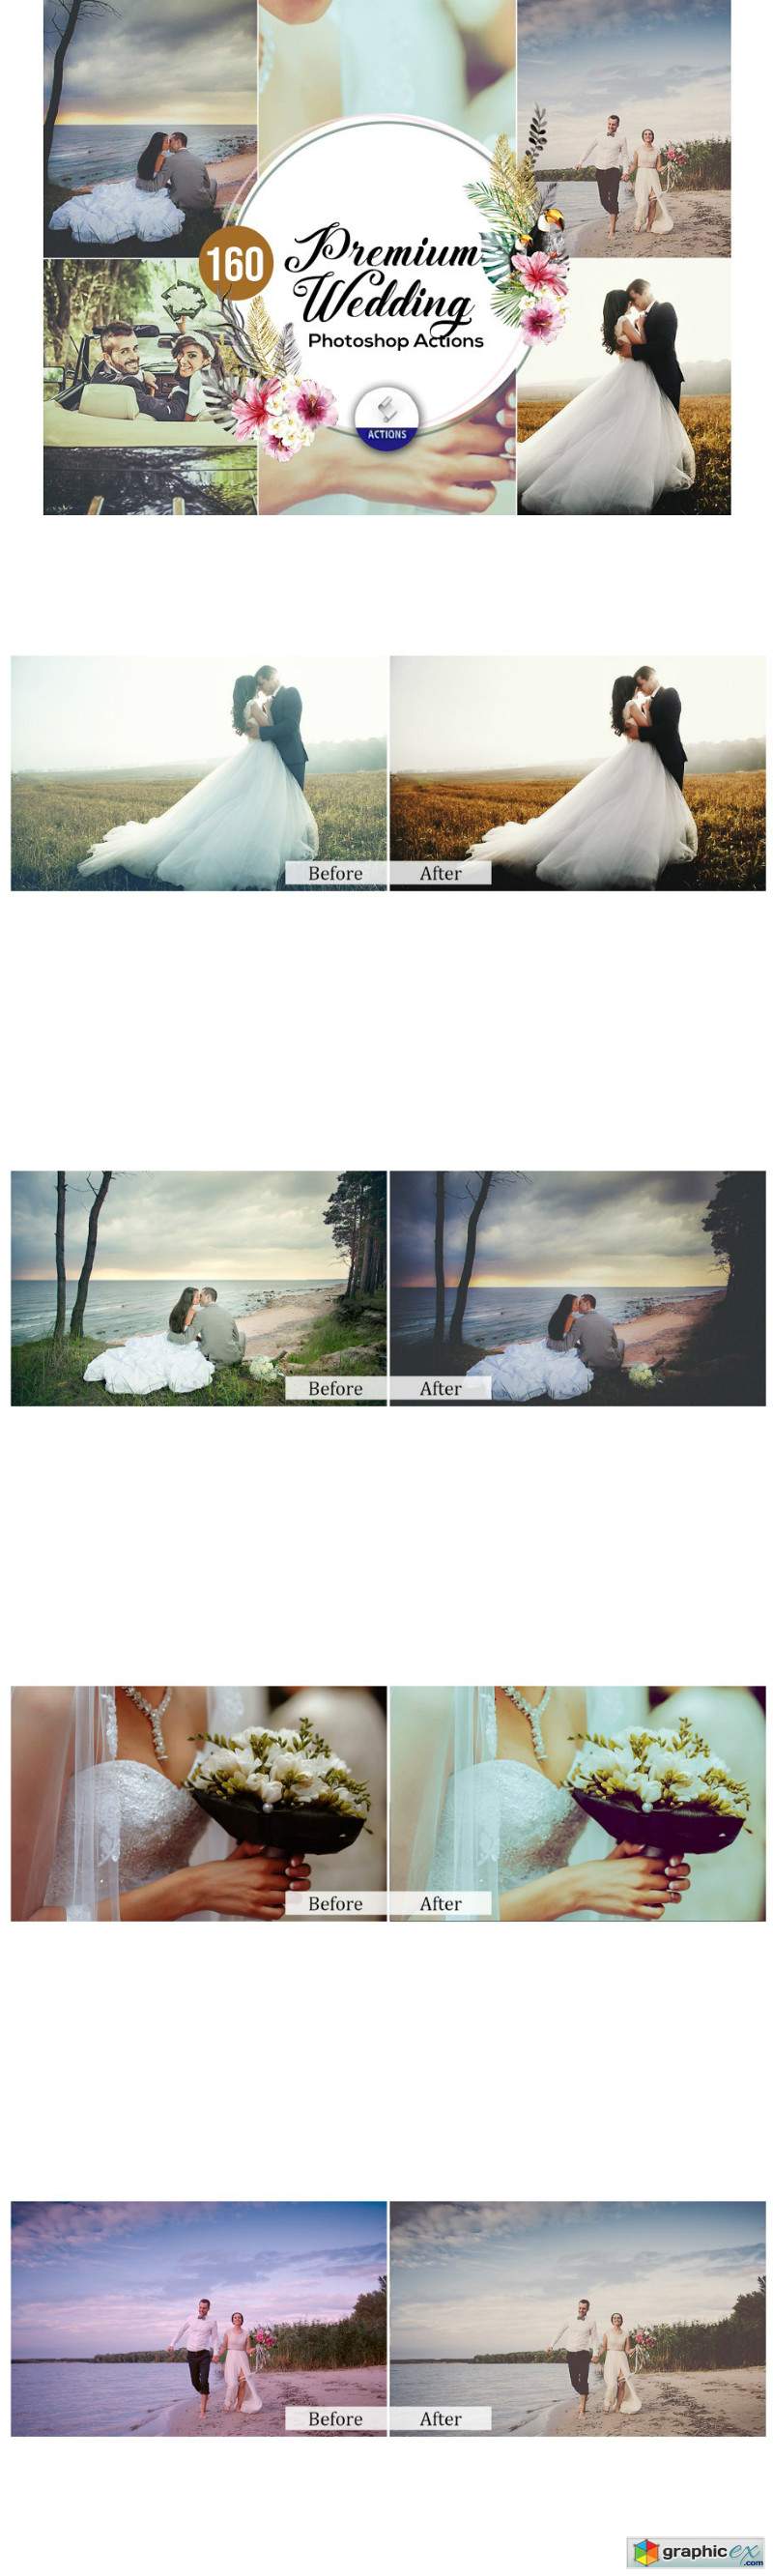 160 Premium Wedding Photoshop Actions